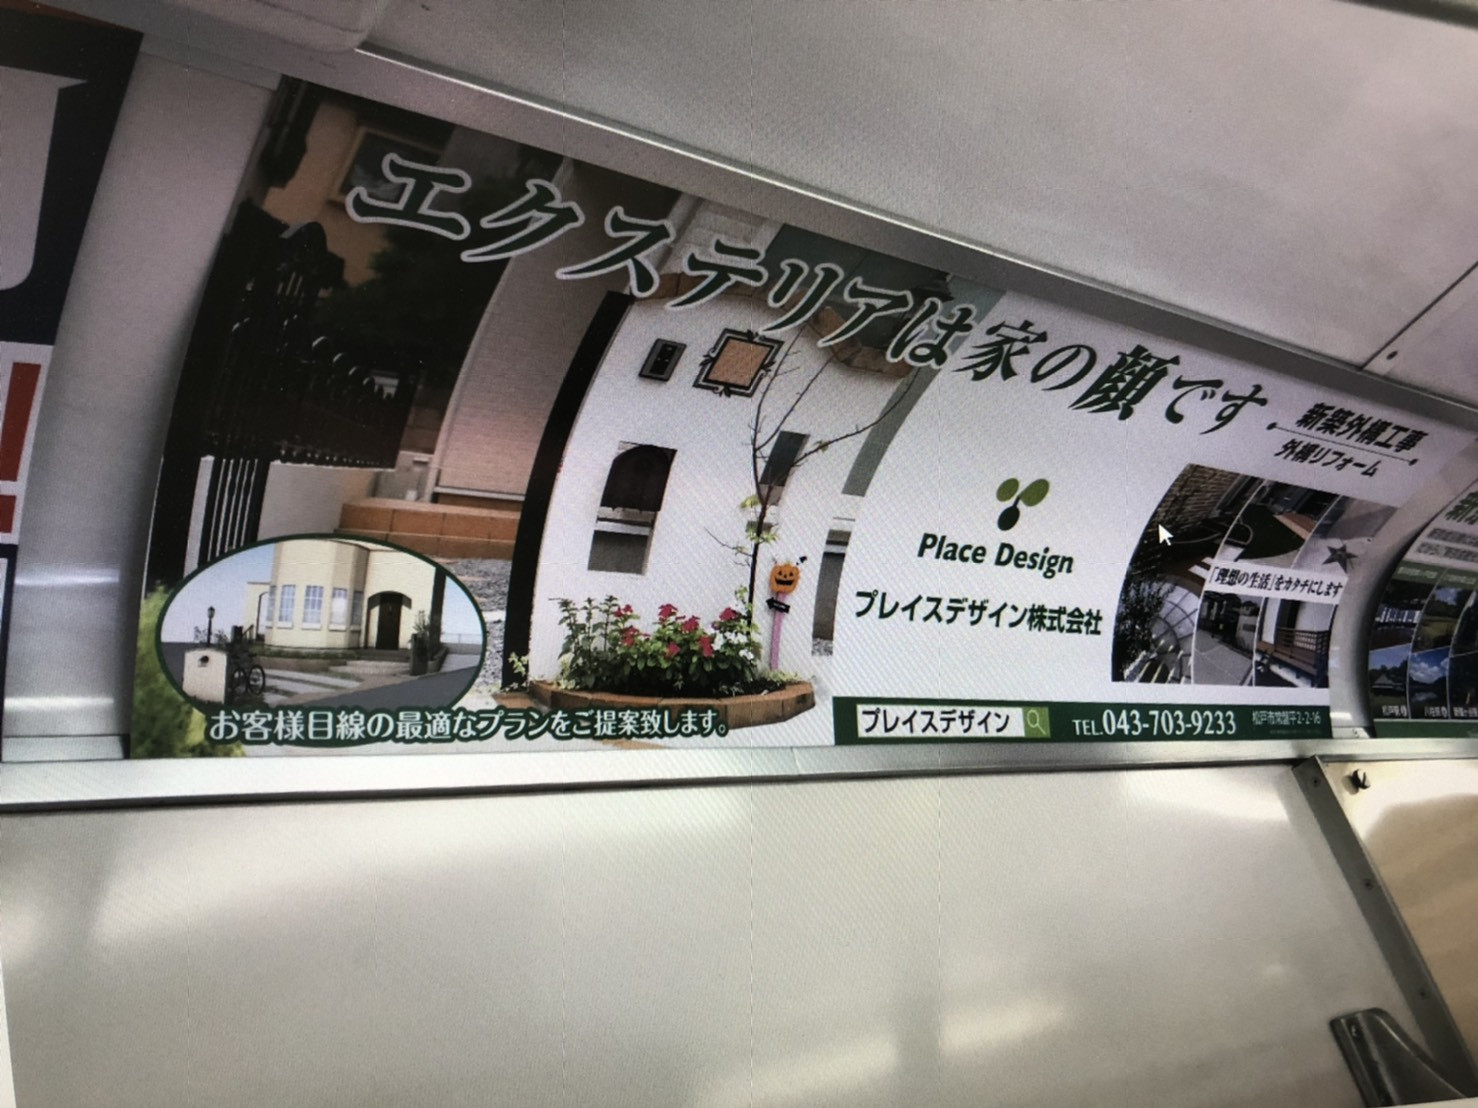 新京成線に広告を出しました。